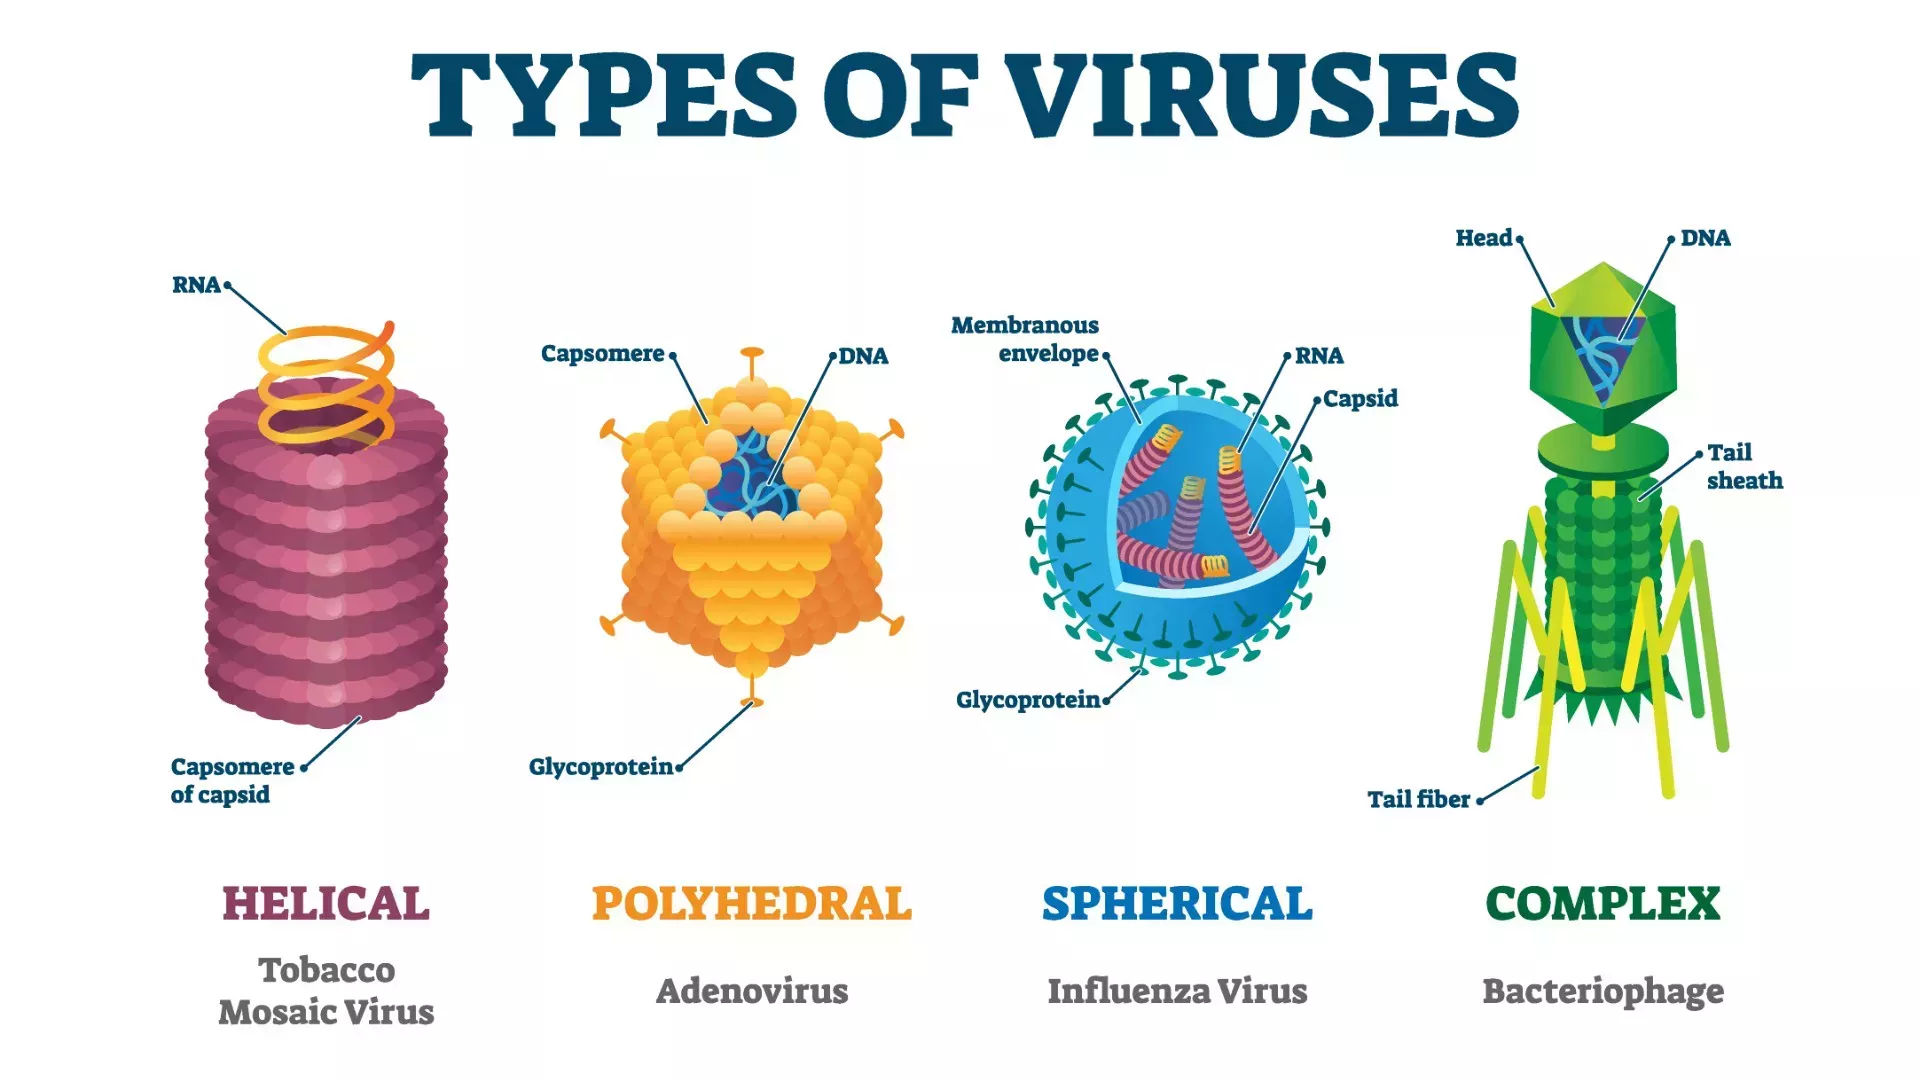 ¿Qué son los virus?